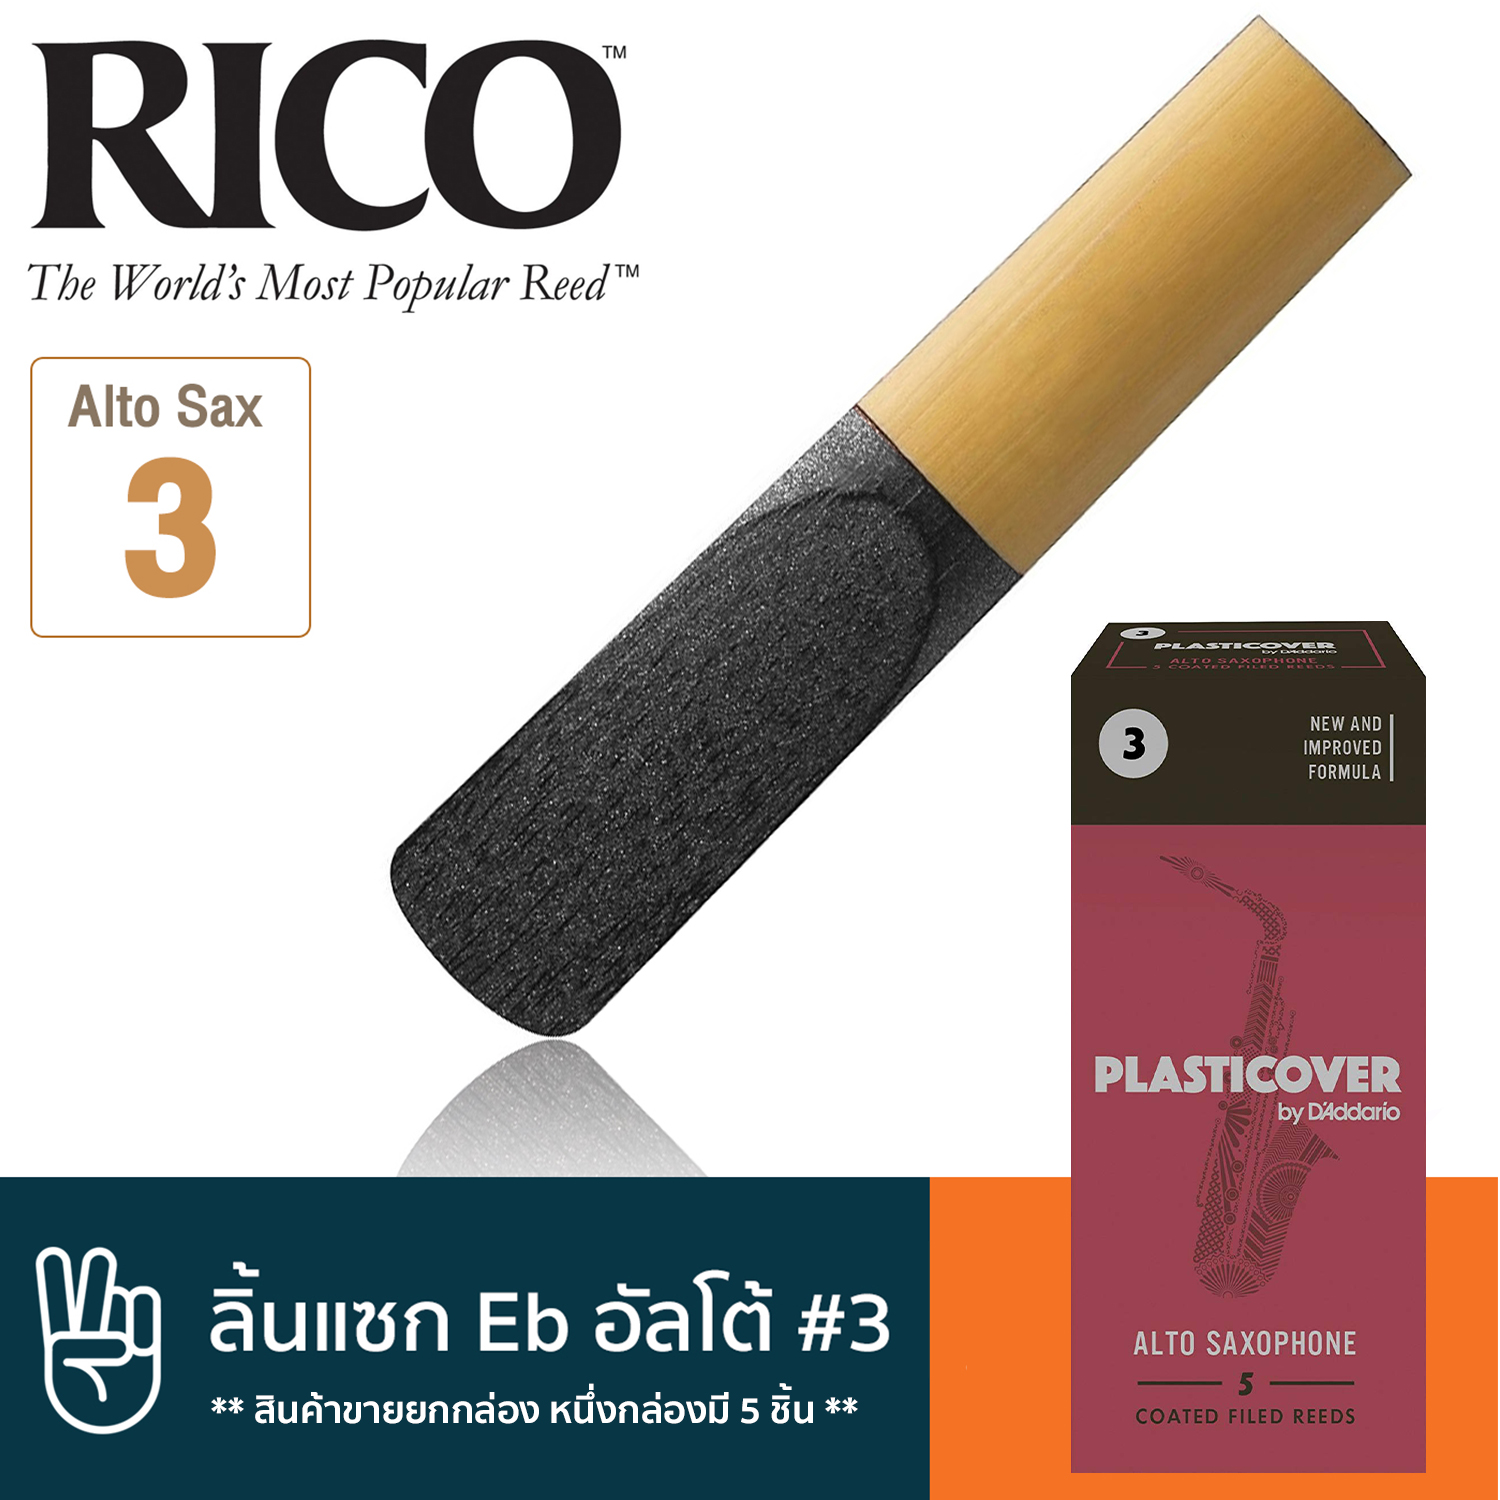 Rico™ ลิ้นแซกโซโฟน อัลโต้ เบอร์ 3 แบบลิ้นดำ (ลิ้นอัลโต้แซก เบอร์ 3, Plasticover Eb Alto Sax Reed #3)**สินค้าขายยกกล่อง หนึ่งกล่องมี 5 ชิ้น**